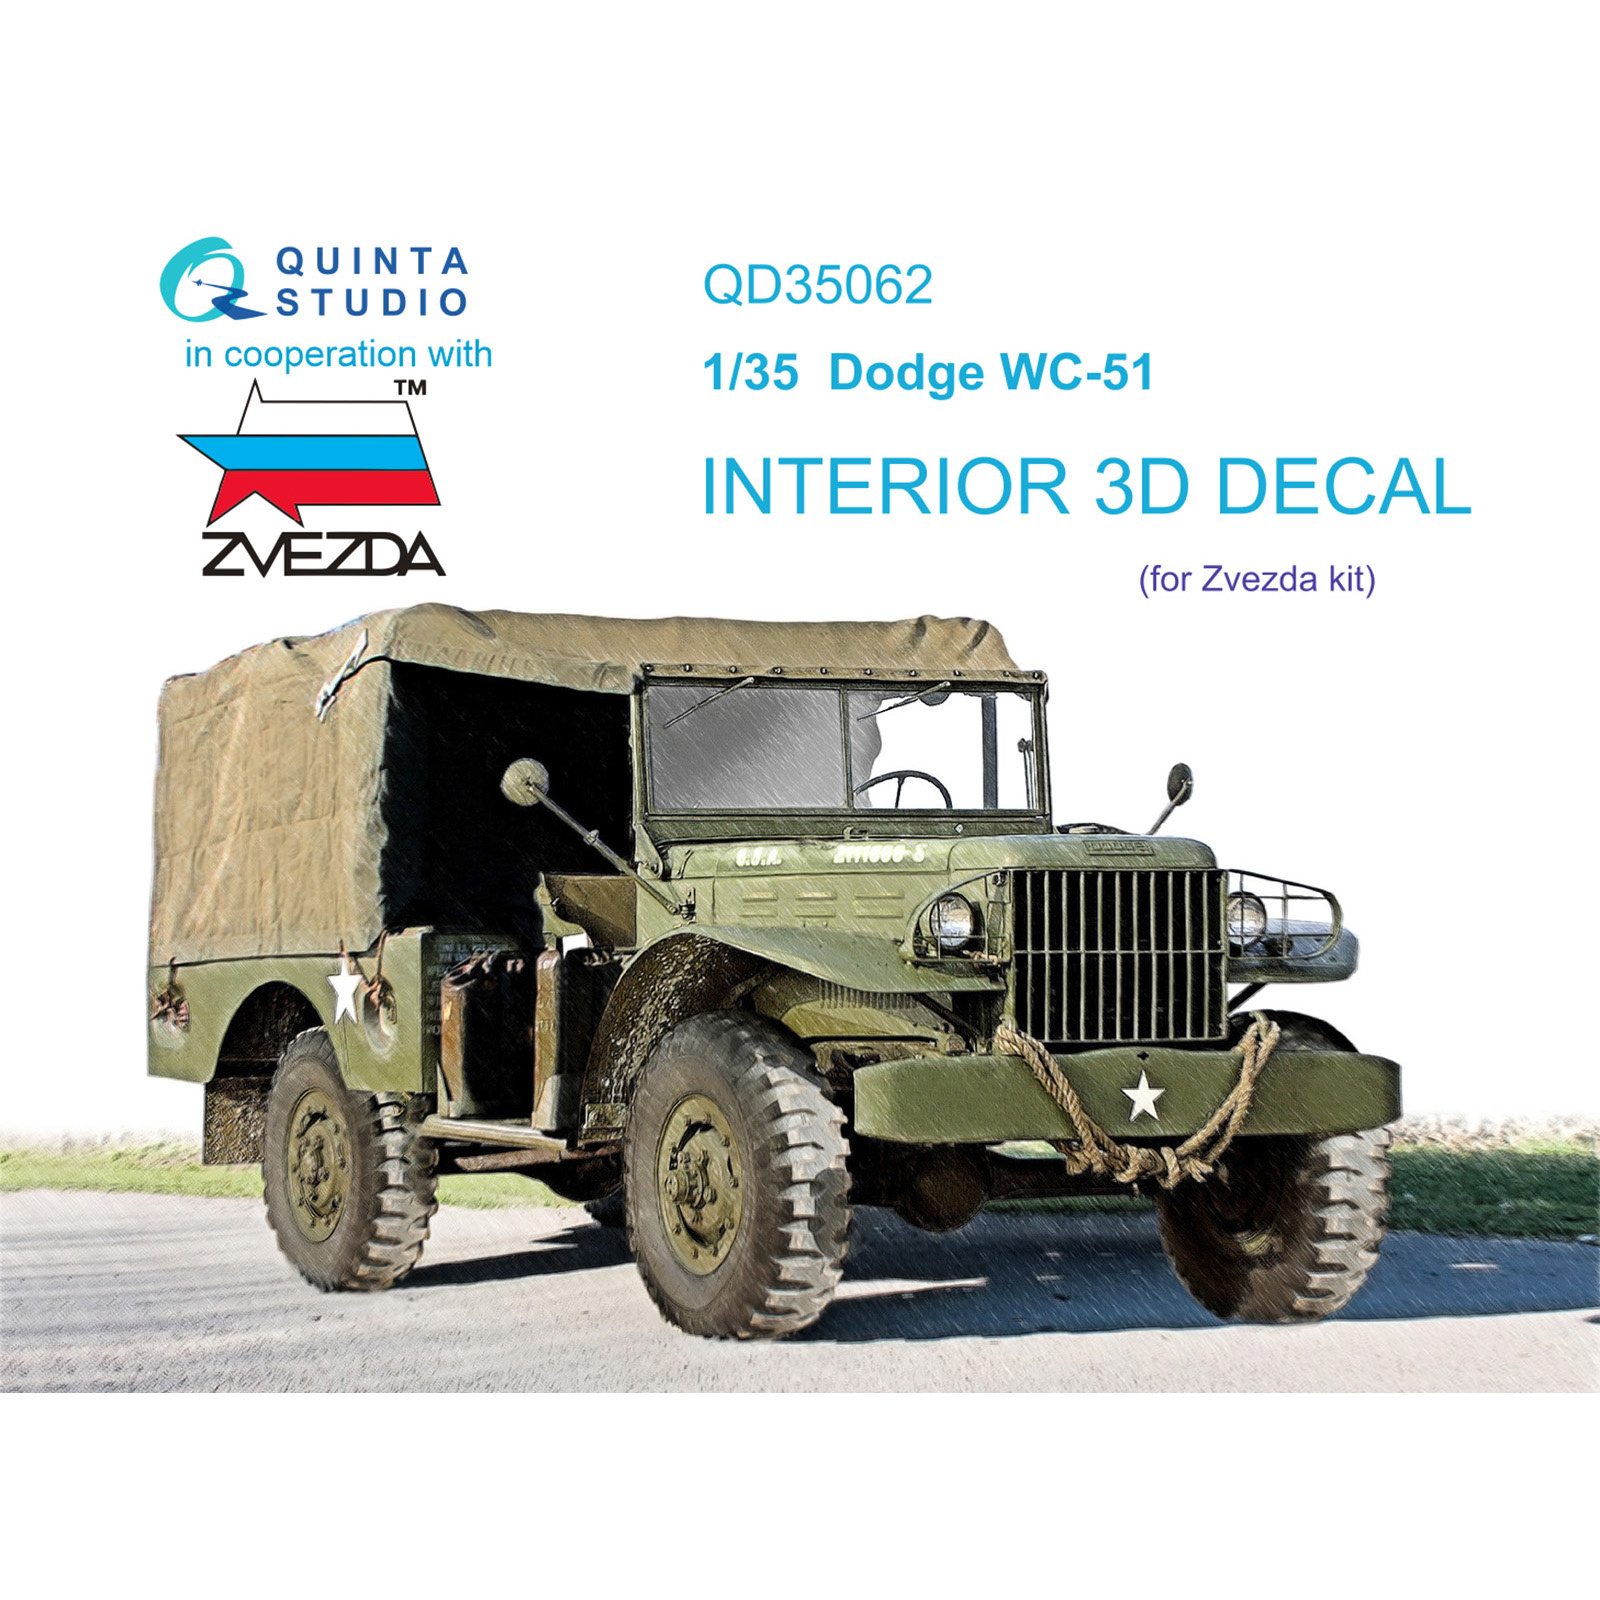 QD35062 Quinta Studio 1/35 3D Декаль интерьера кабины для модели фирмы Zvezda, 